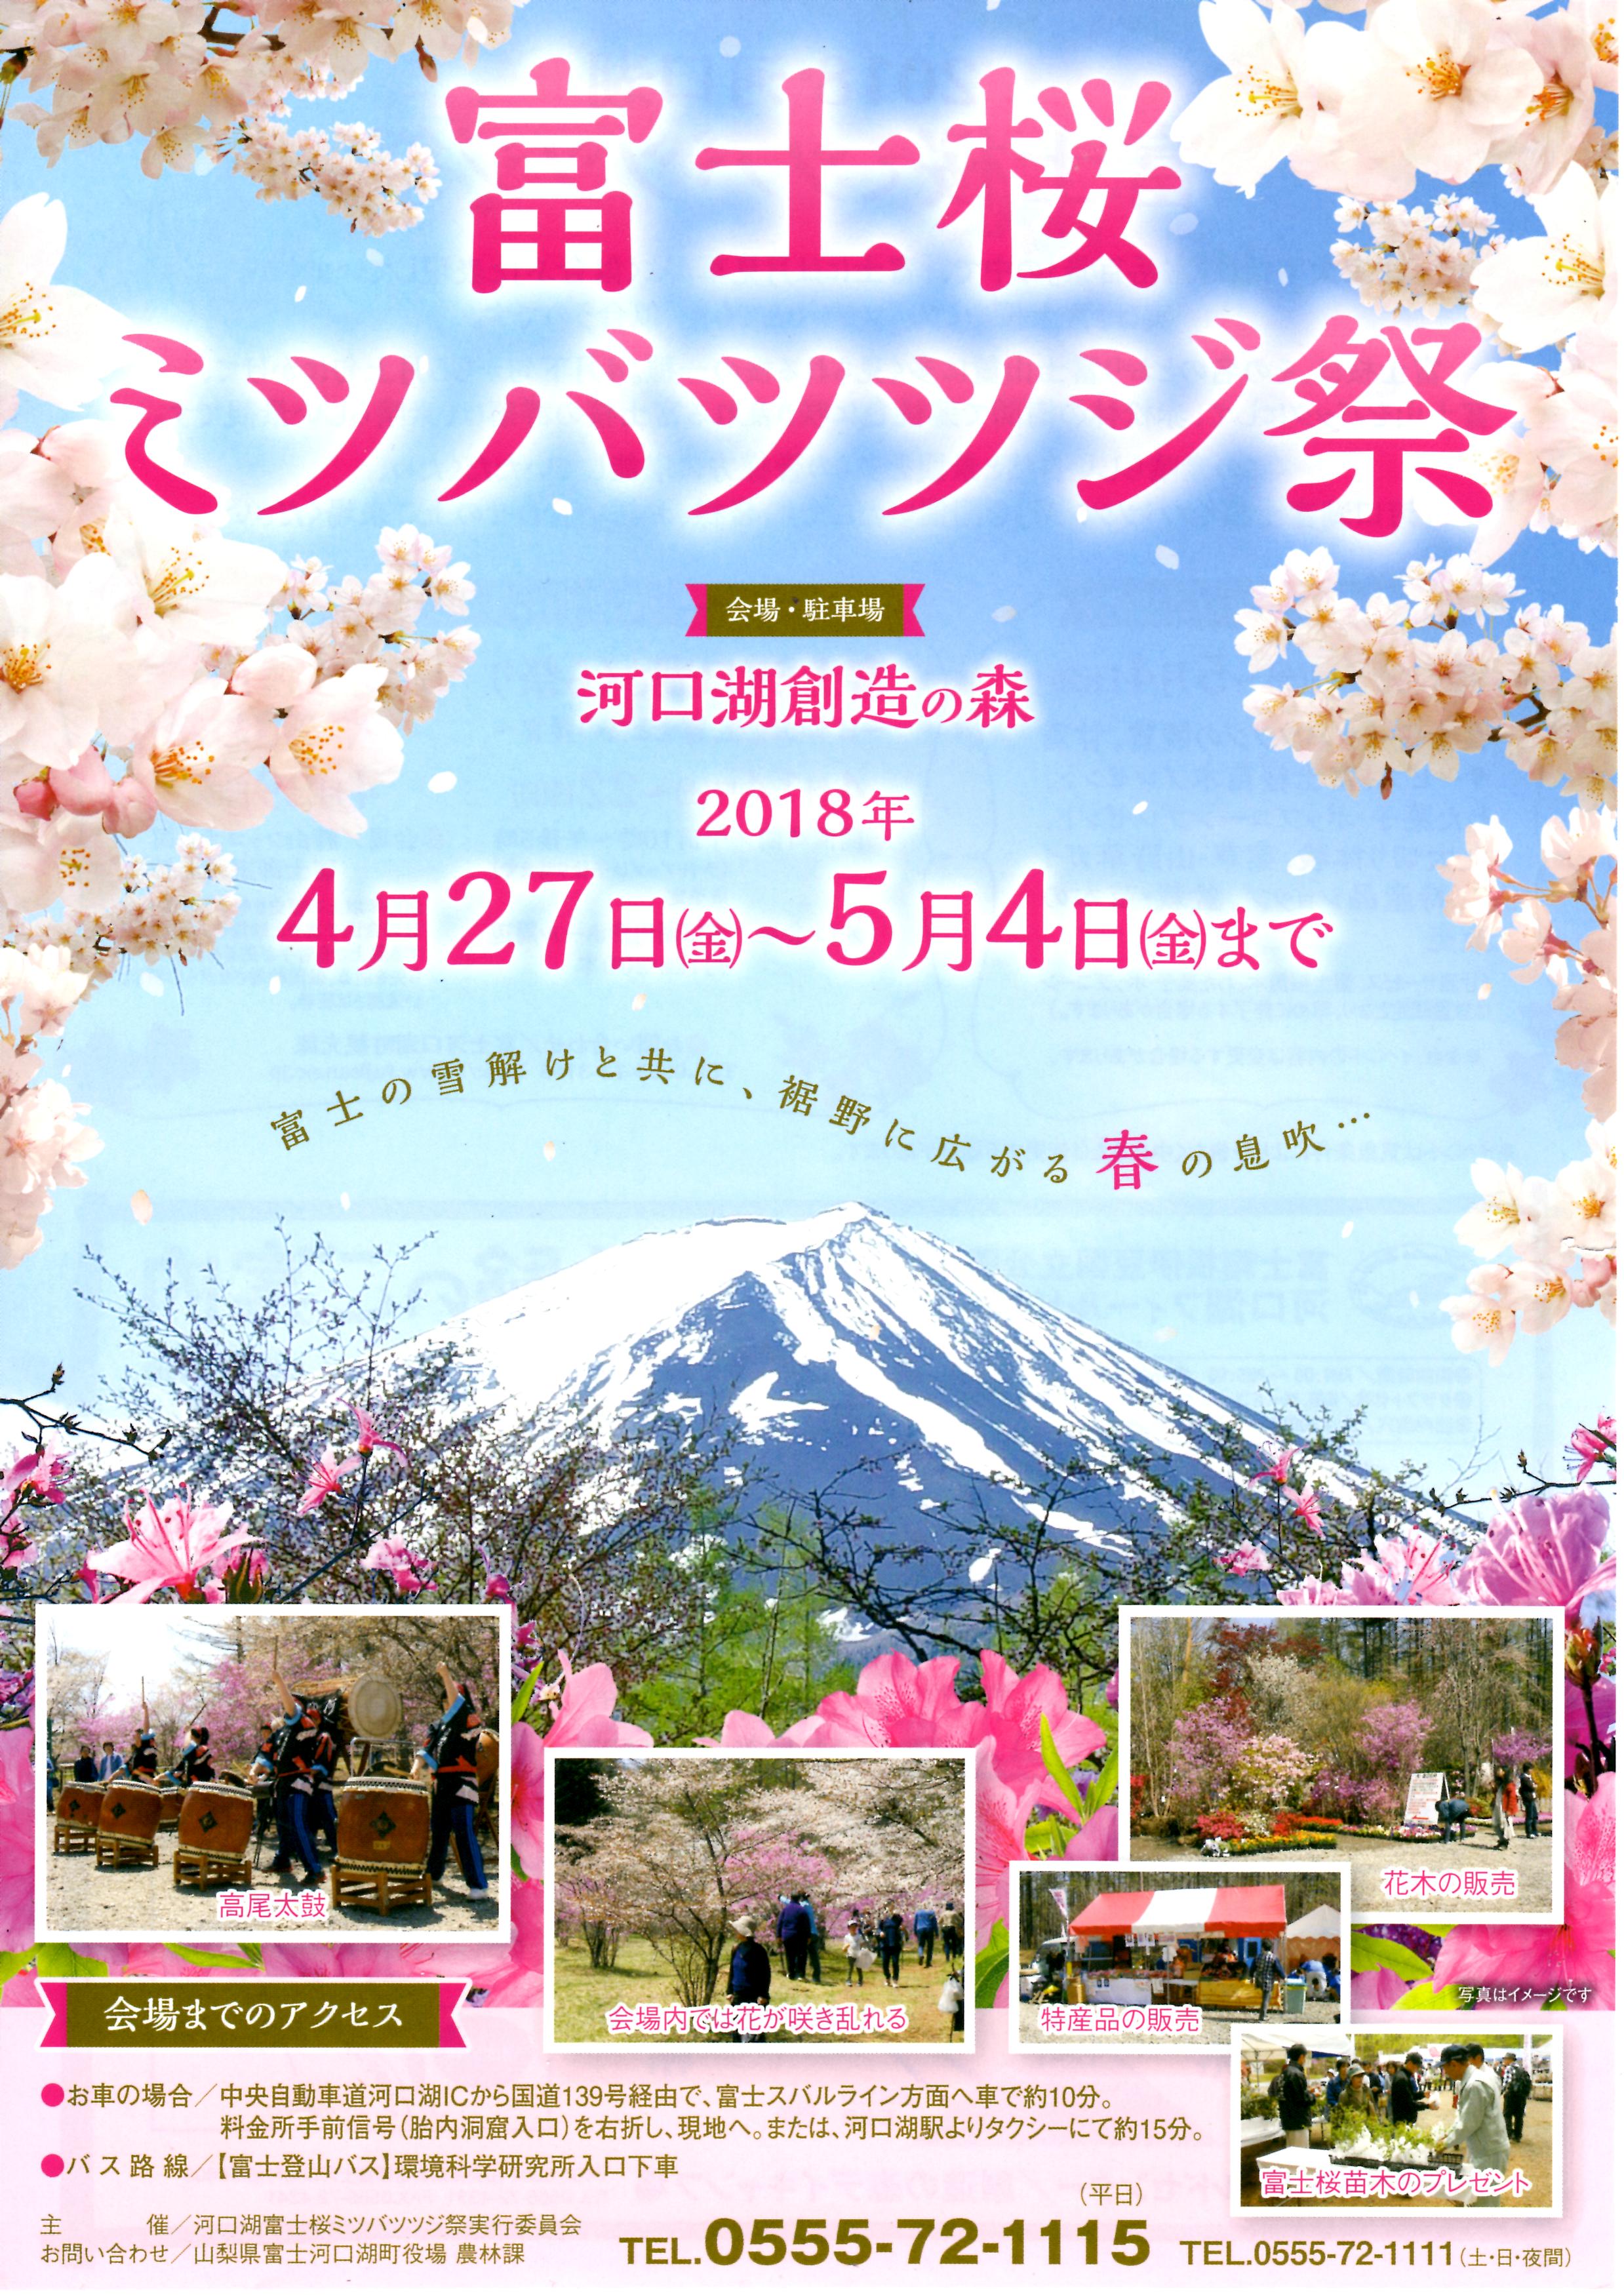 富士桜・ミツバツツジ祭り